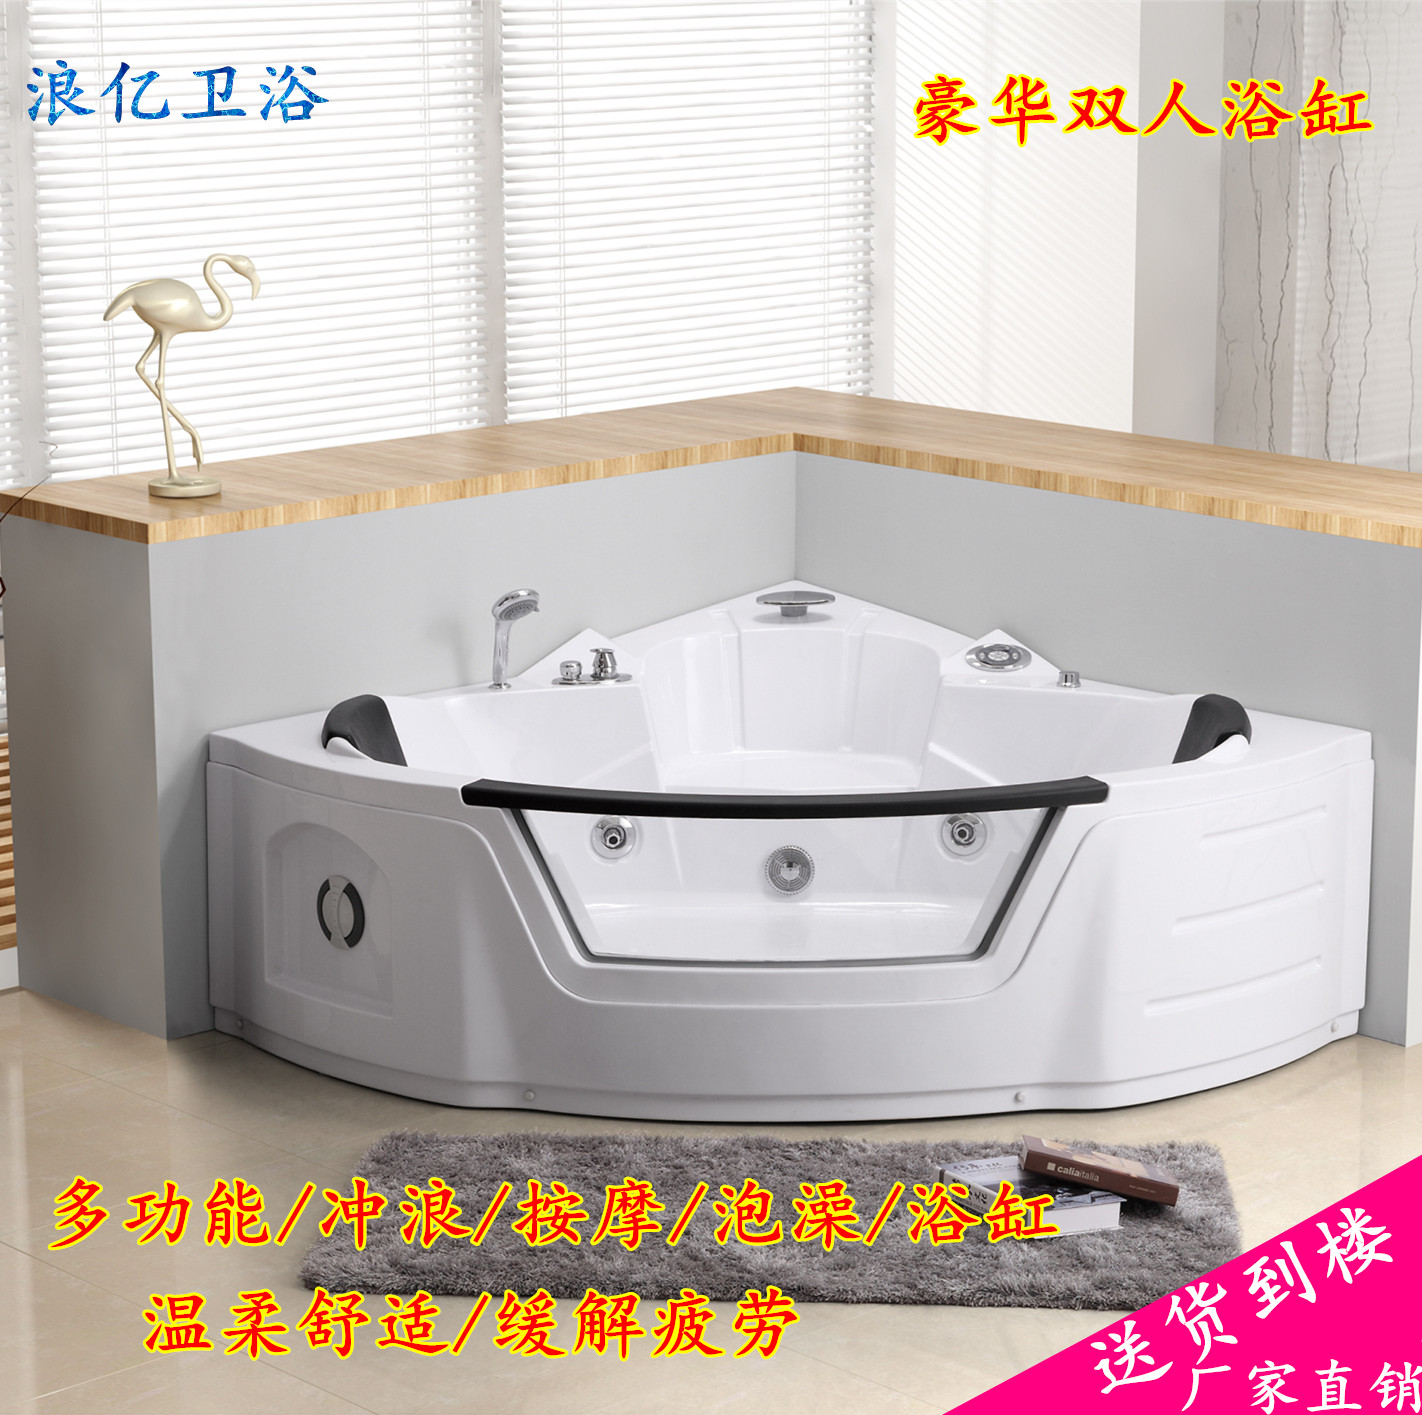 浪亿卫浴豪华多功能冲浪按摩洗浴缸扇形双人缸1.55米欧式独立浴缸